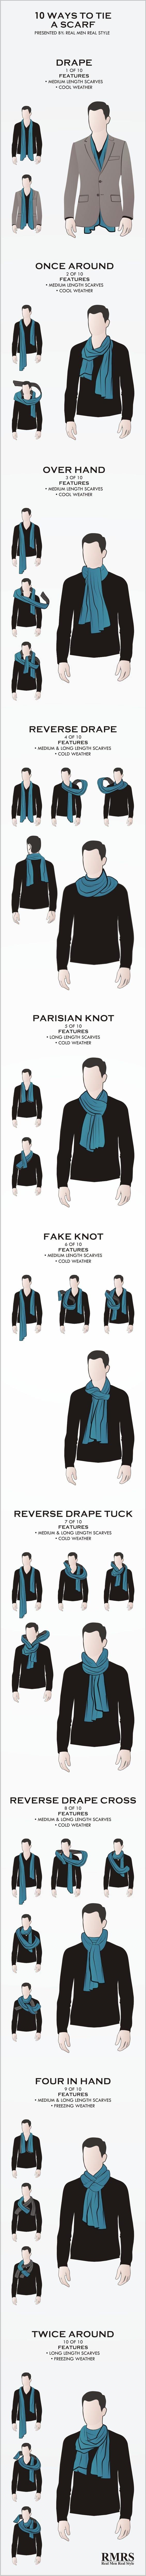 10 maneiras masculinas de amarrar lenços | Infográfico de nós de lenço masculino